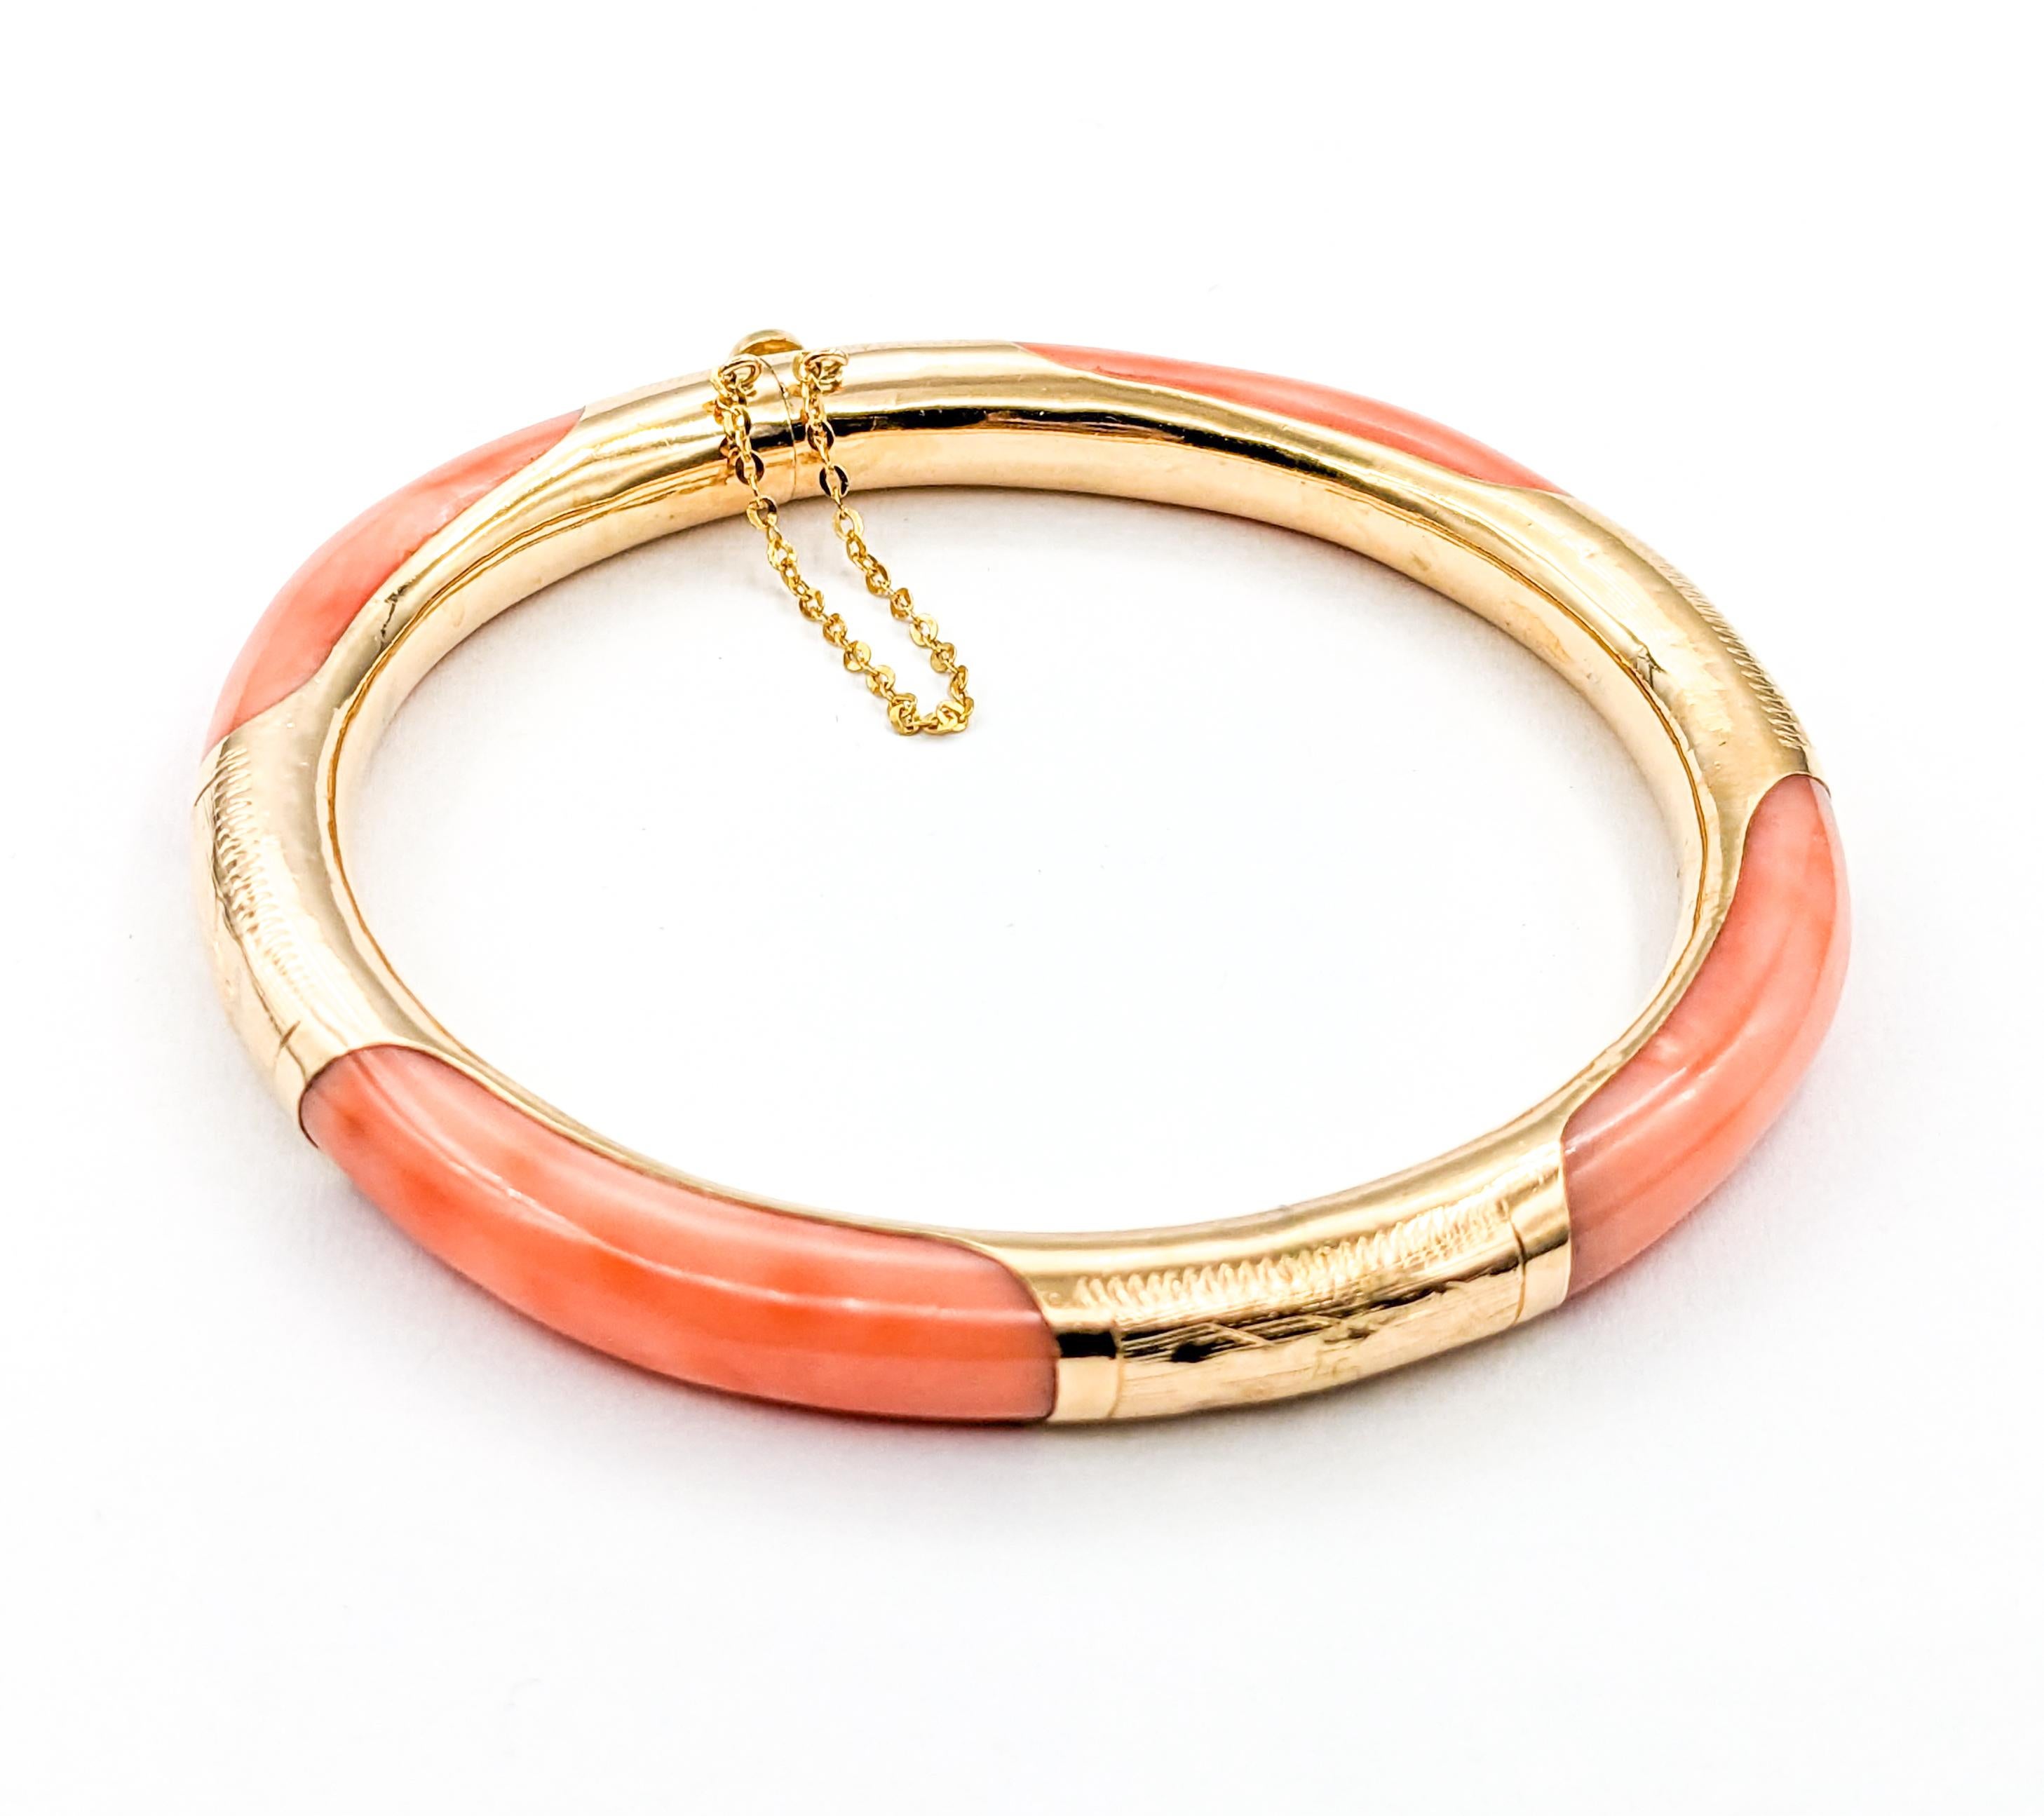 Bracelet de corail vintage en or jaune

Découvrez le charme d'une élégance révolue avec ce magnifique bracelet bangle vintage, créé de main de maître en or jaune 14kt. Cette pièce classique est ornée d'une pierre précieuse organique en corail,